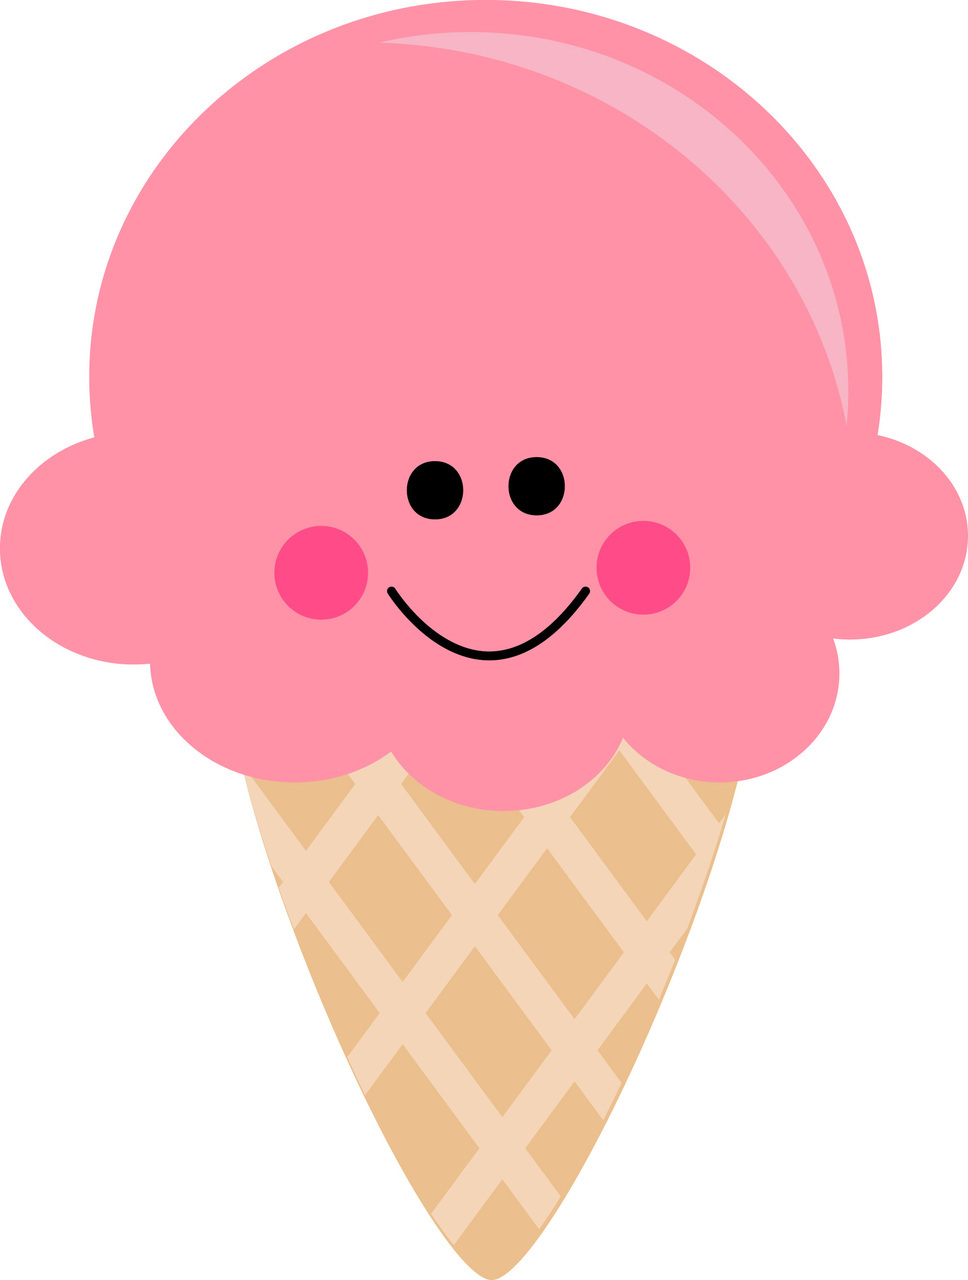 Ice cream cone images clip art